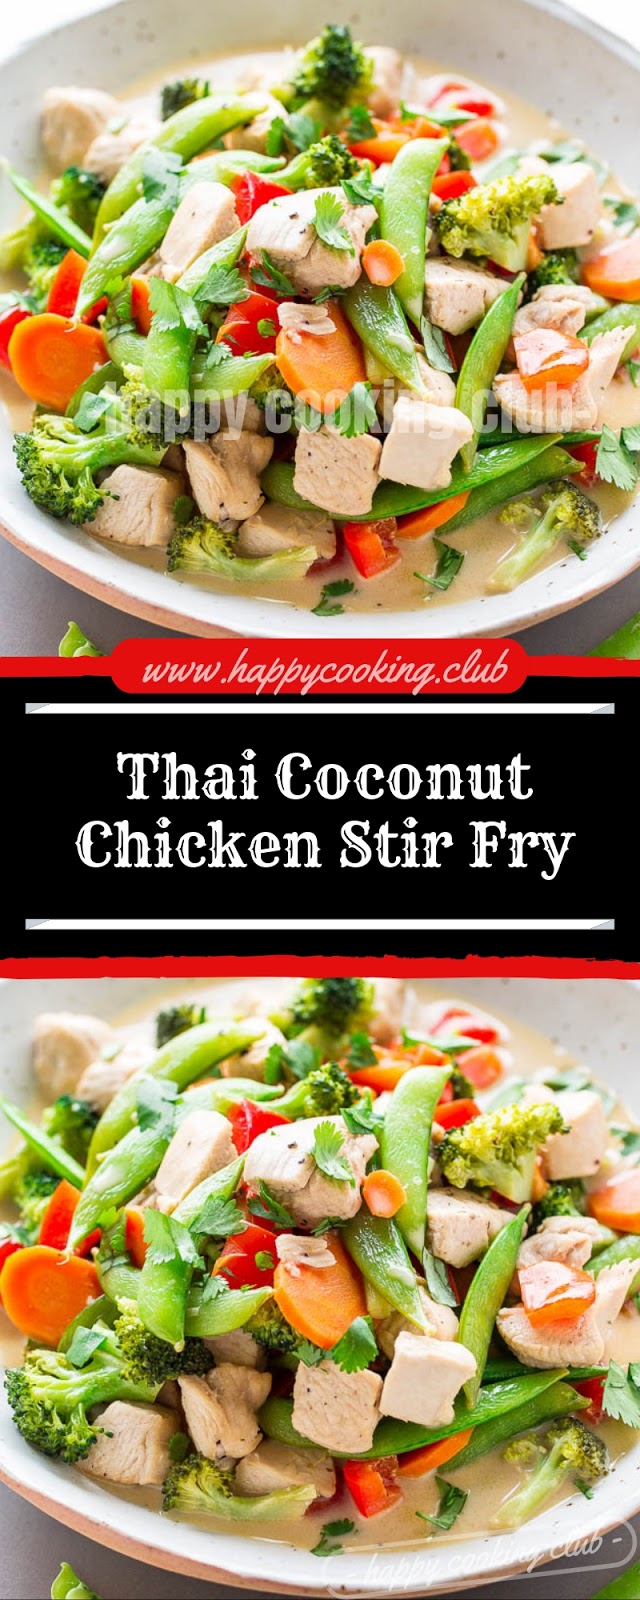 Thai Coconut Chicken Stir Fry